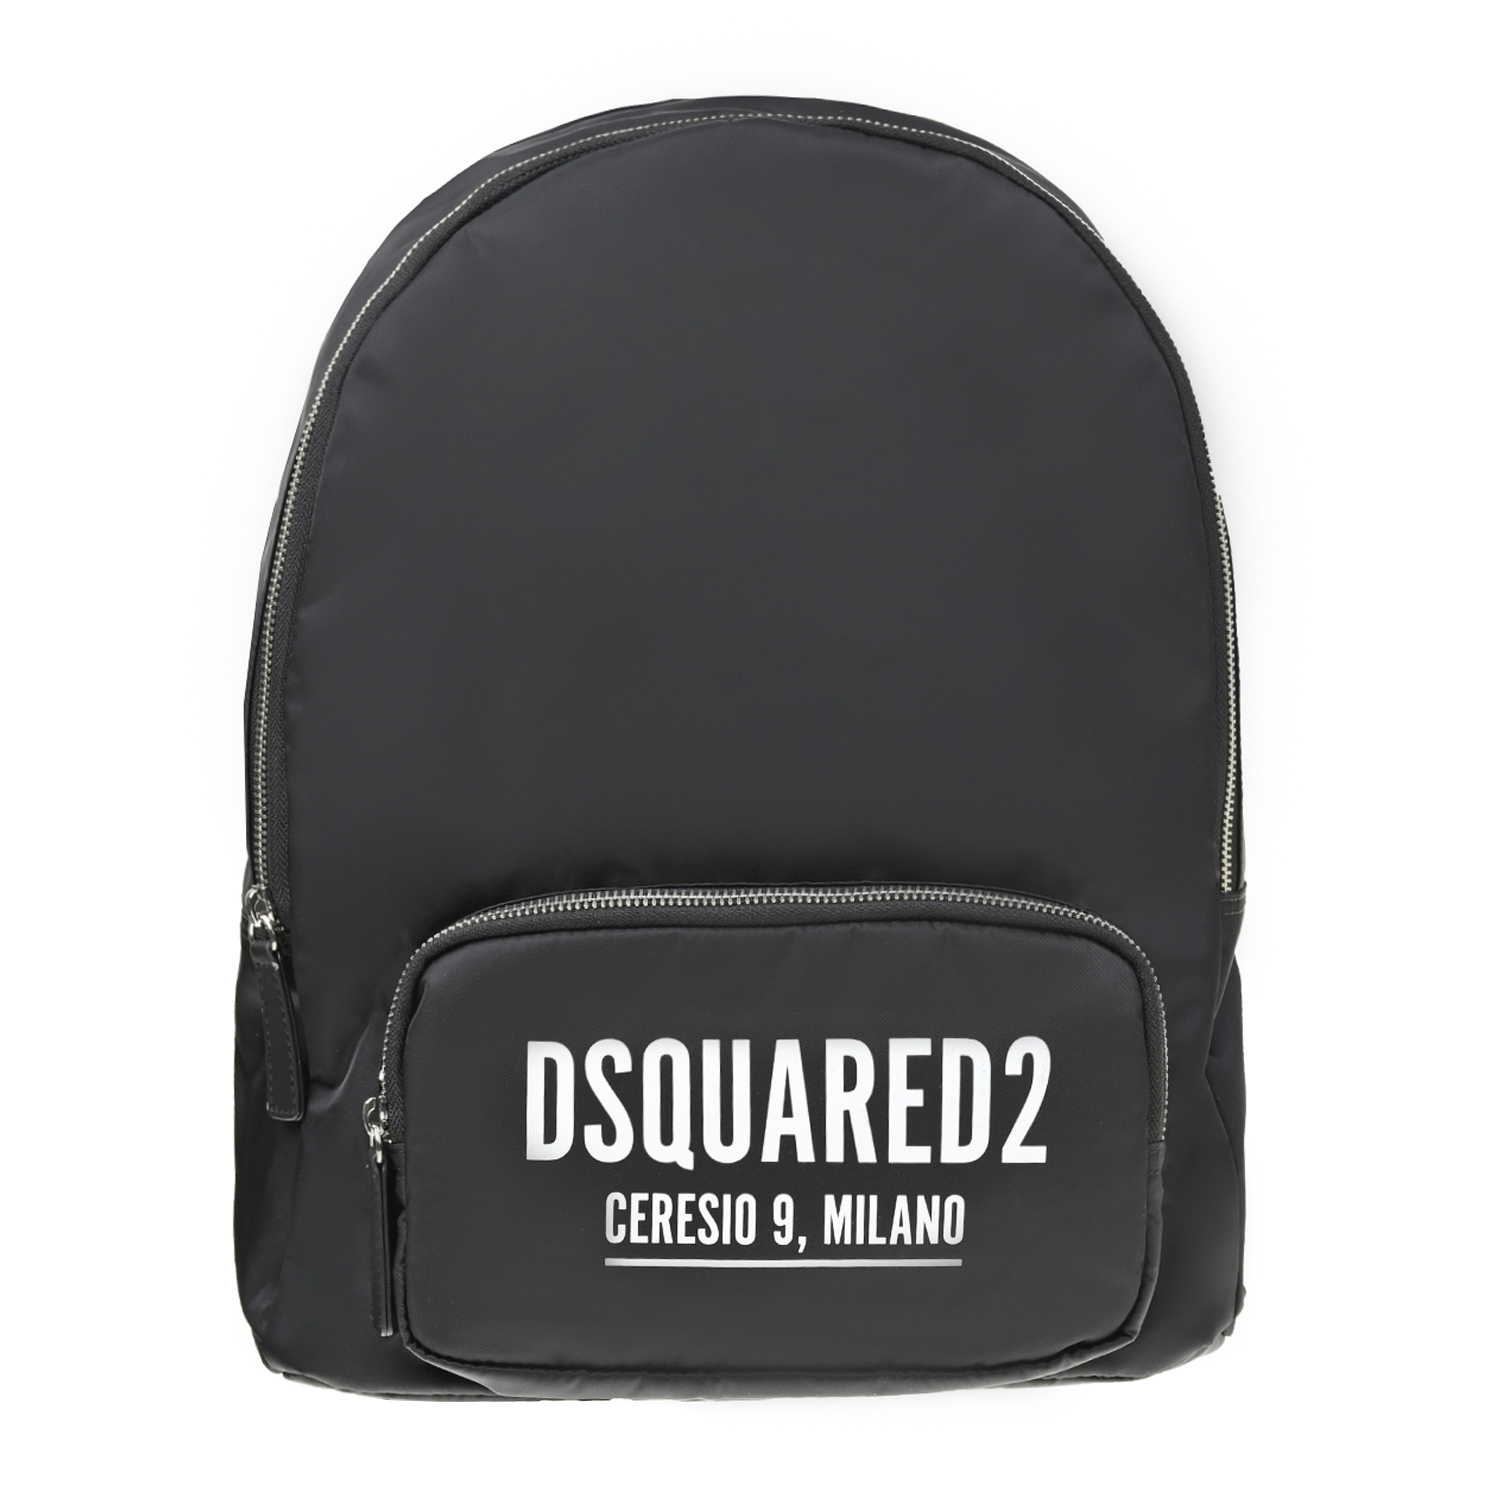 Черный рюкзак с накладным карманом, 38x32x12 см Dsquared2 детский, размер unica